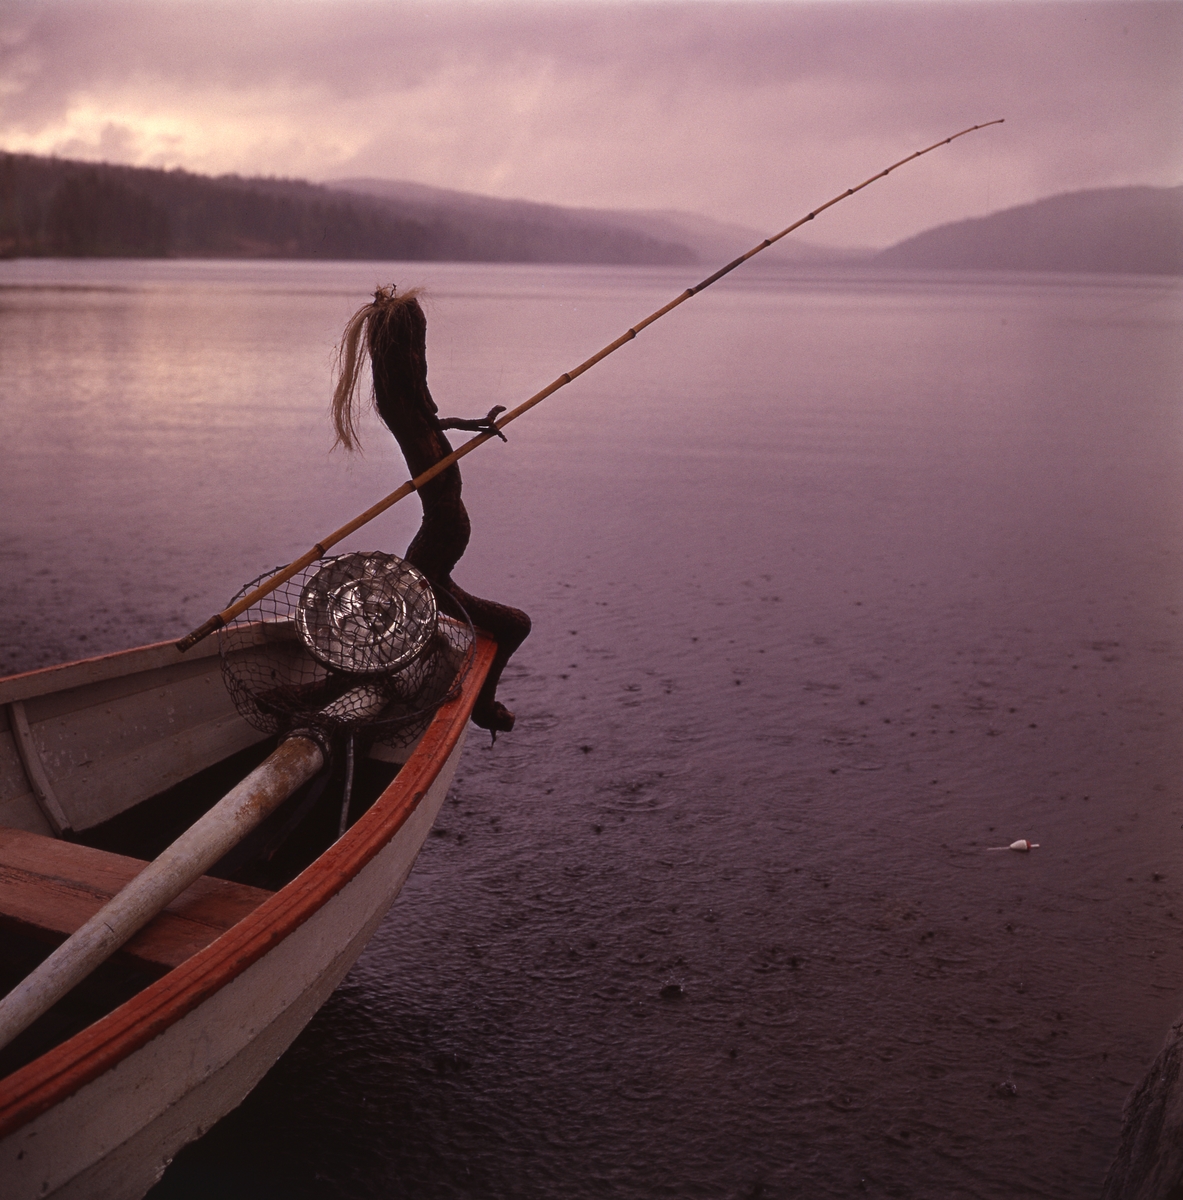 Trätrollet Skrälla Skrälle sitter i en roddbåt ute på sjön Ängratörn och metar. Det regnar.